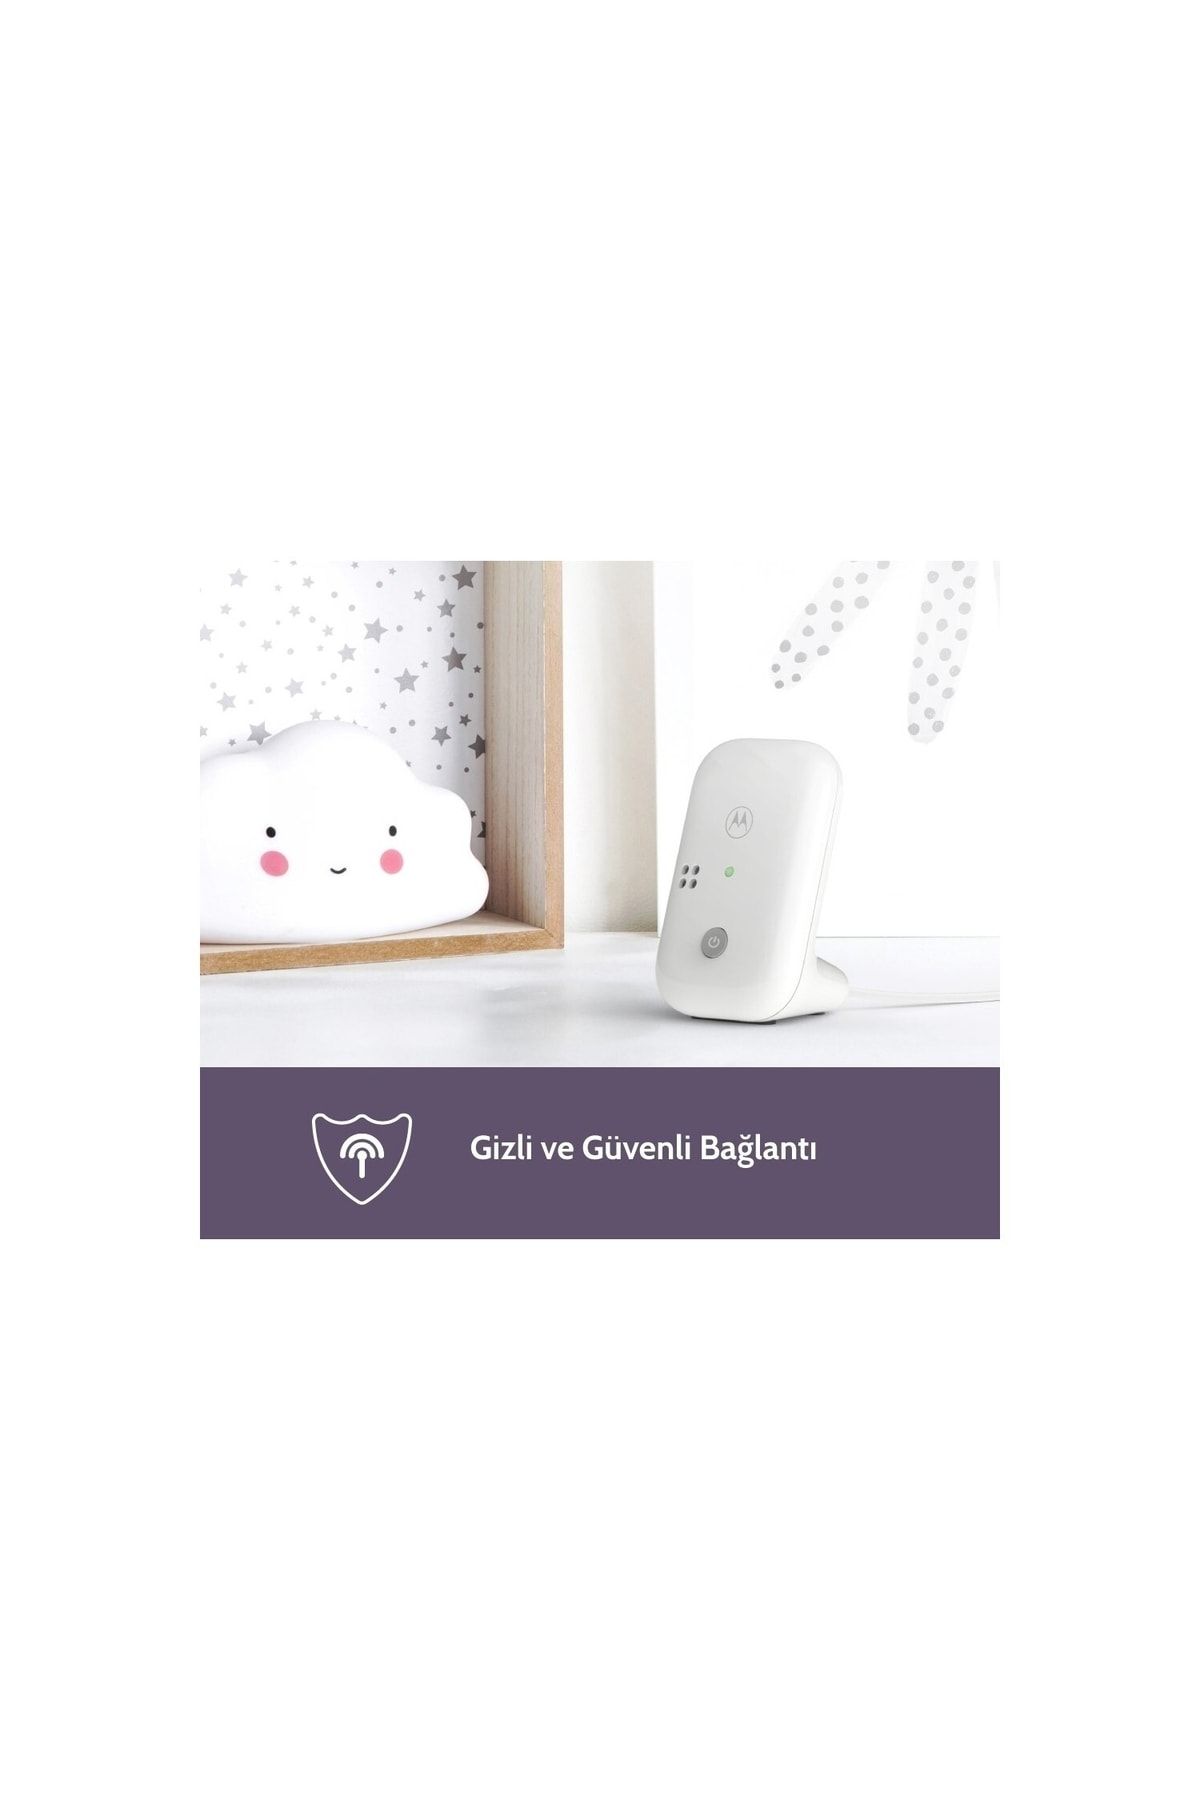 Motorola Dijital Bebek Telsizi - Hassas Mikrofon Ve Net Hoparlör Sayesinde Bebeğiniz Güvende